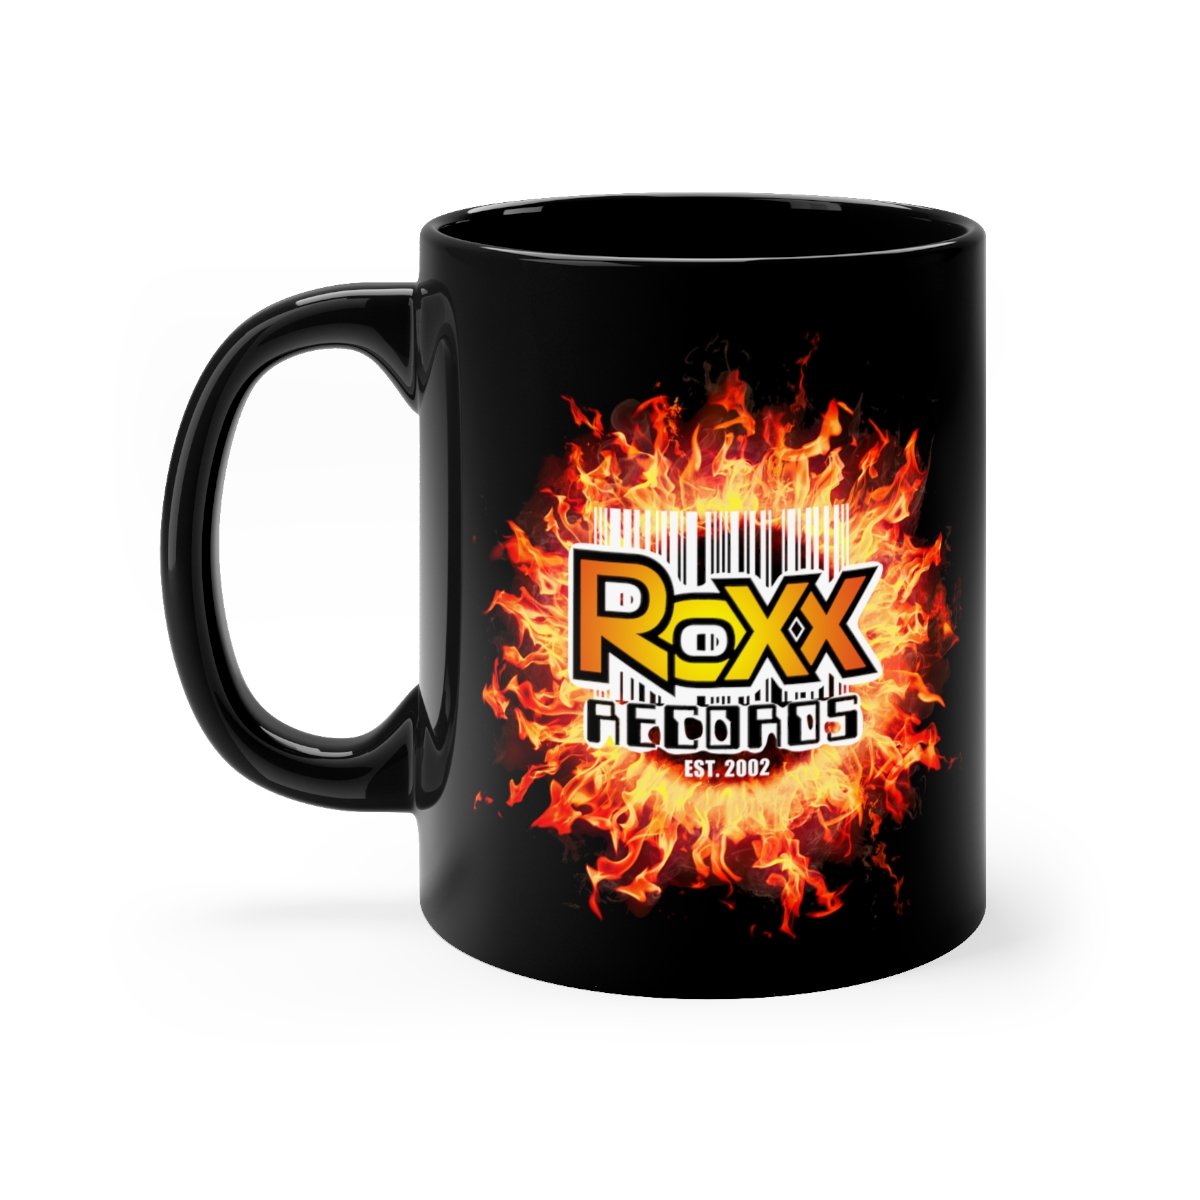 Roxx Records Fire Black mug 11oz